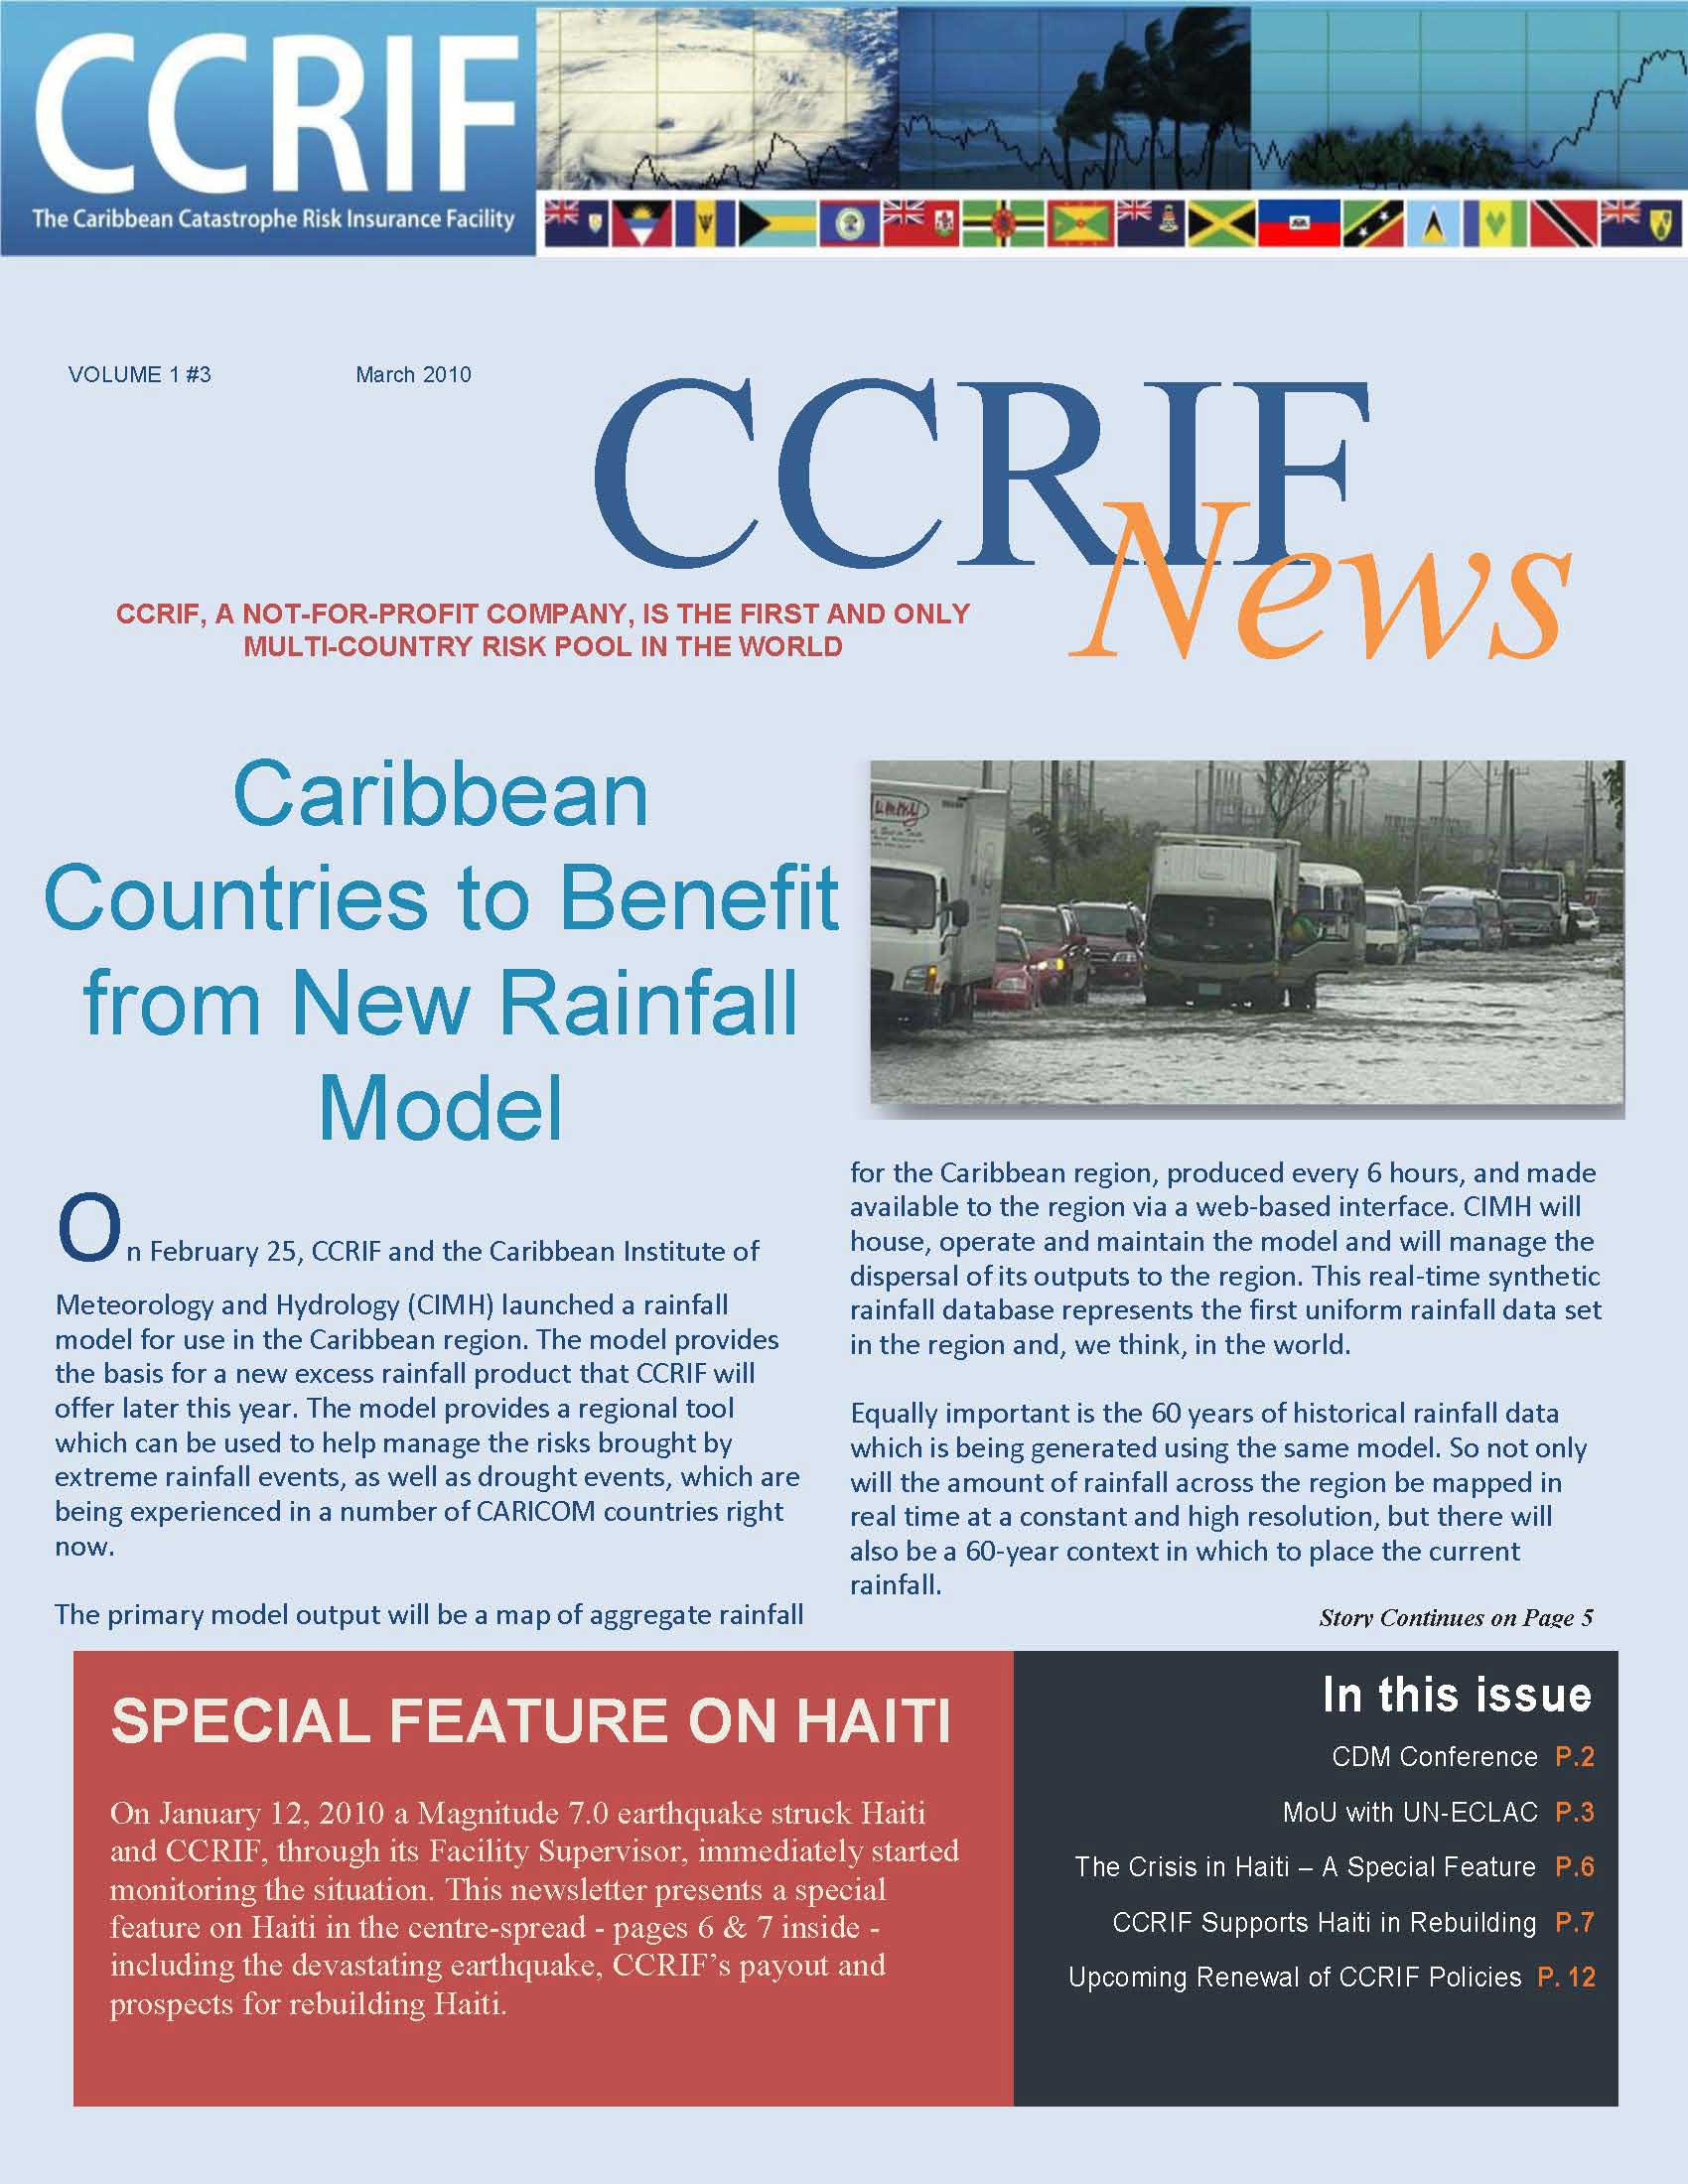 CCRIF News - Vol 1, No 3 - March 2010